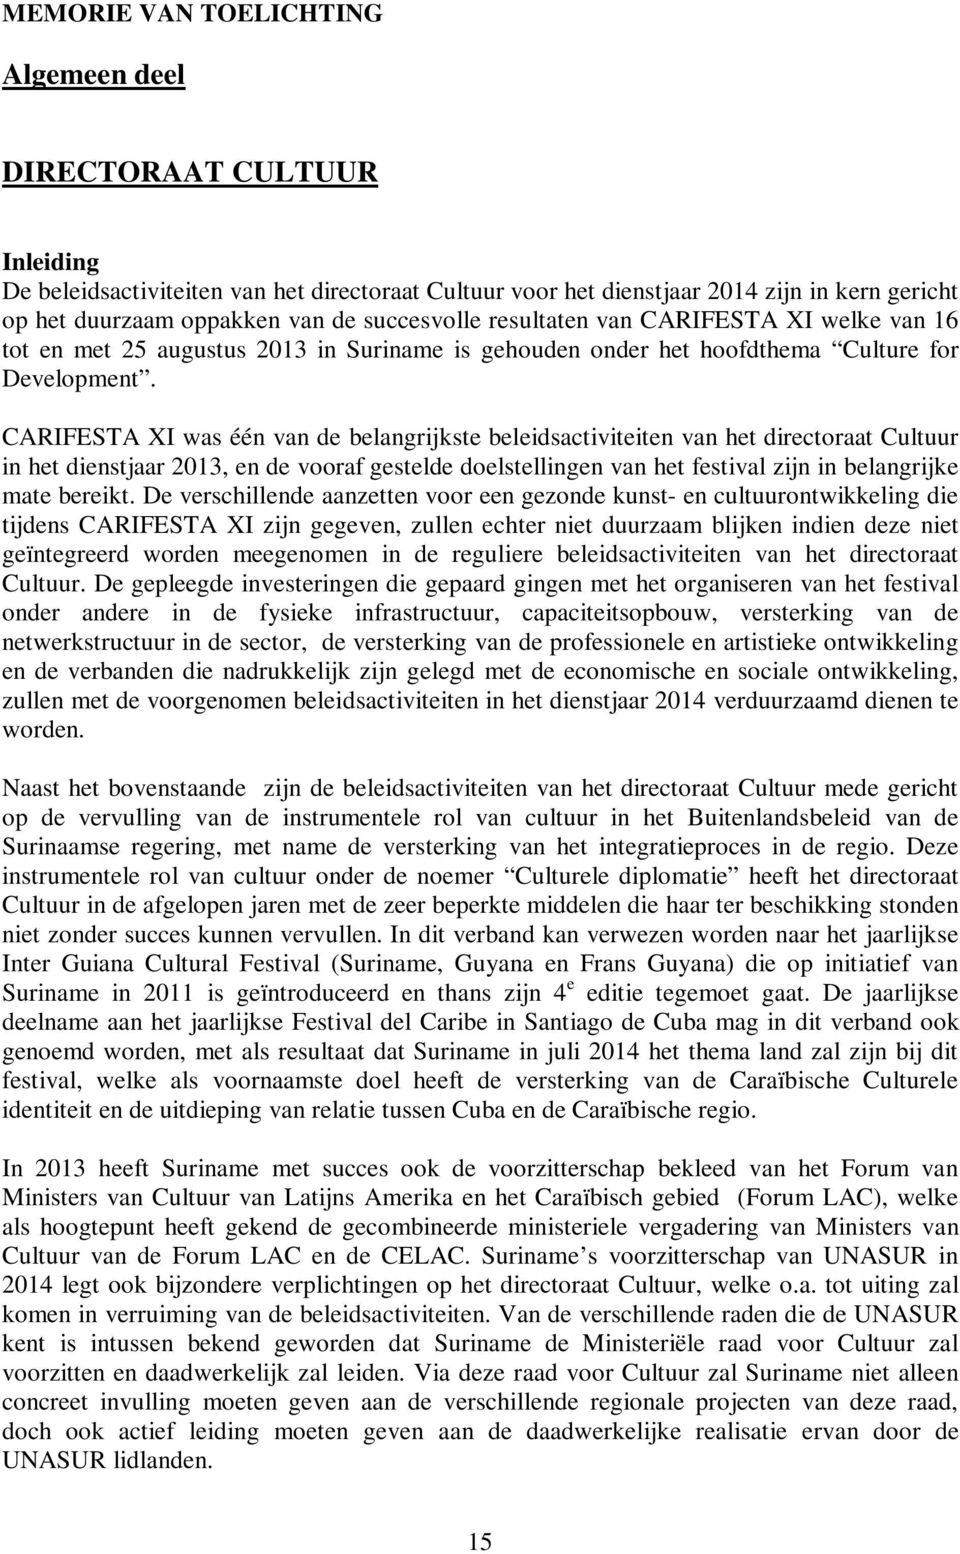 CARIFESTA XI was één van de belangrijkste beleidsactiviteiten van het directoraat Cultuur in het dienstjaar 2013, en de vooraf gestelde doelstellingen van het festival zijn in belangrijke mate